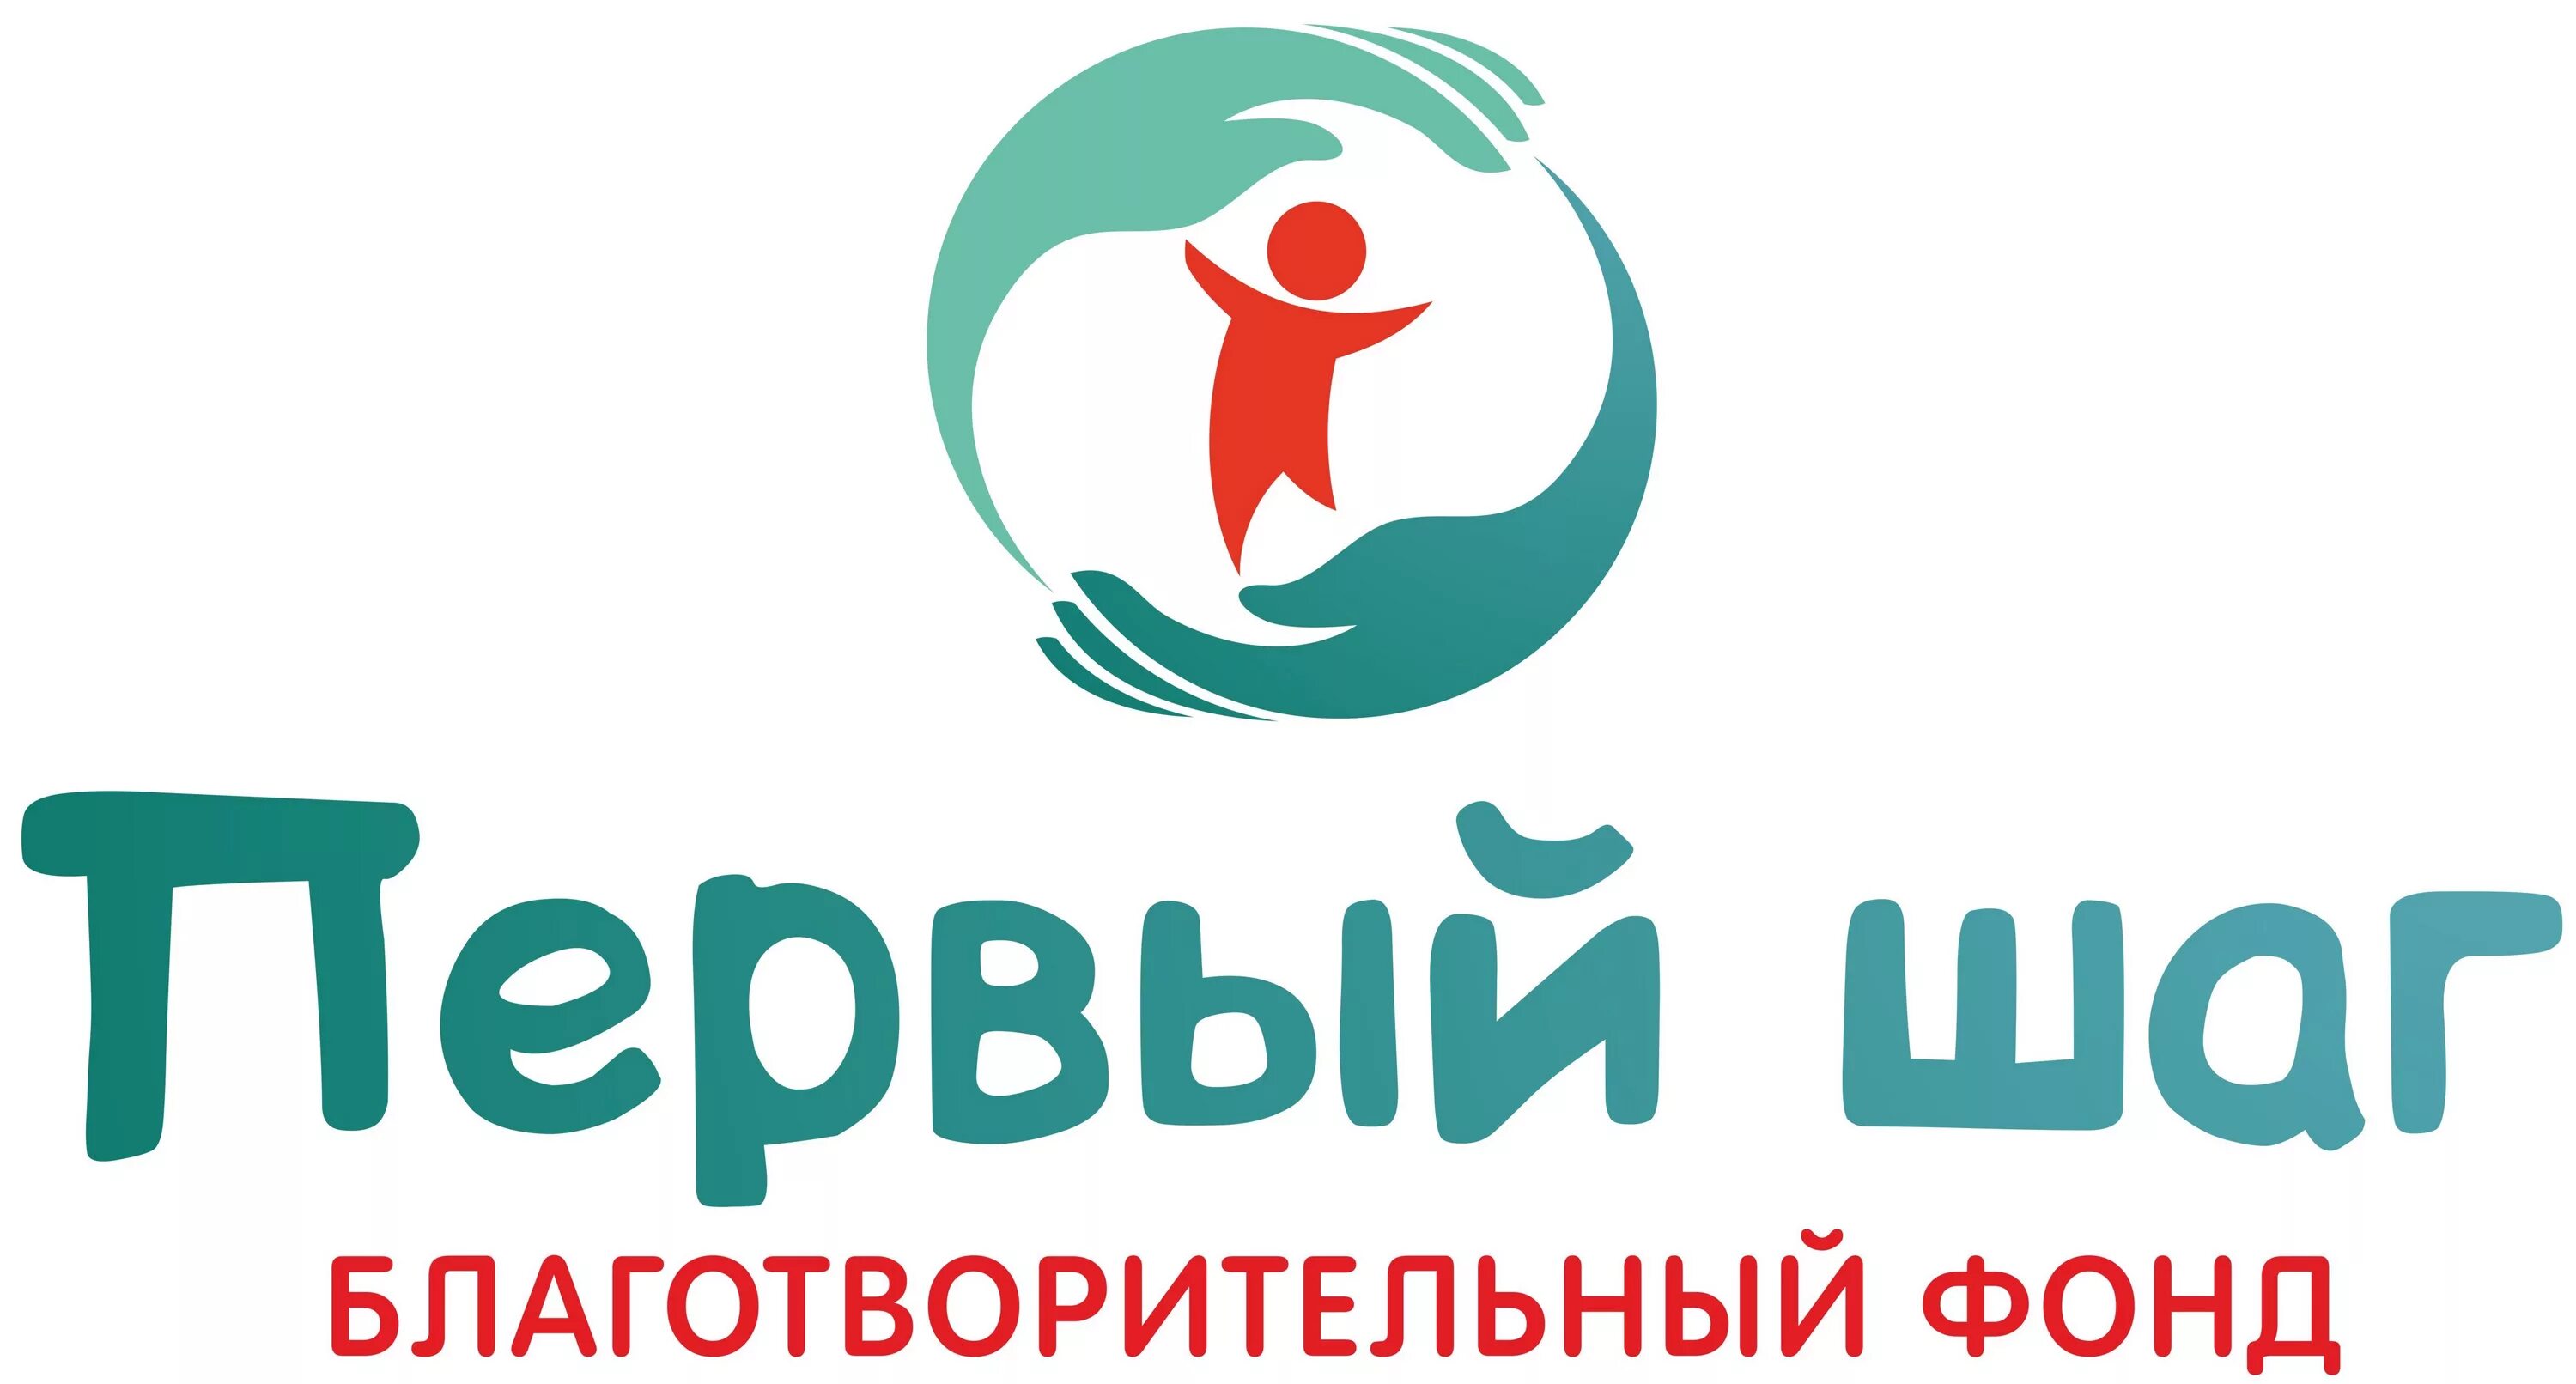 Фонд поддержки людей. Благотворительный фонд. Эмблема благотворительности. Благотворительный фонд лого. Логотипы благотворительных фондов России.